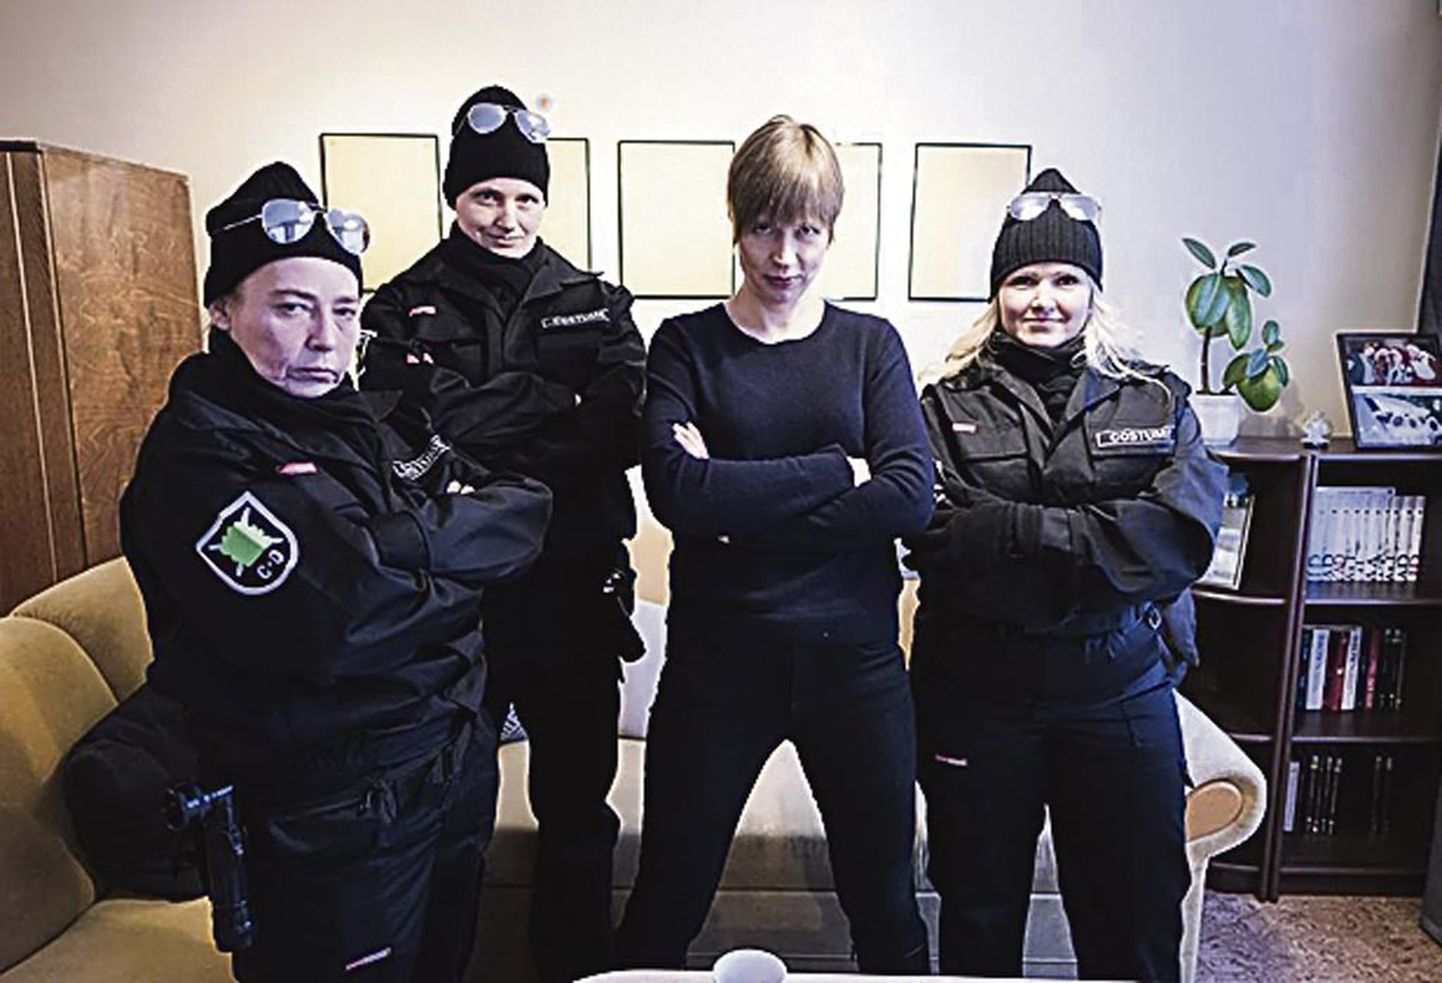 Turvatöötajate vormid on näituse eksponaadid (paremalt teine on Kersti Kaljulaid).